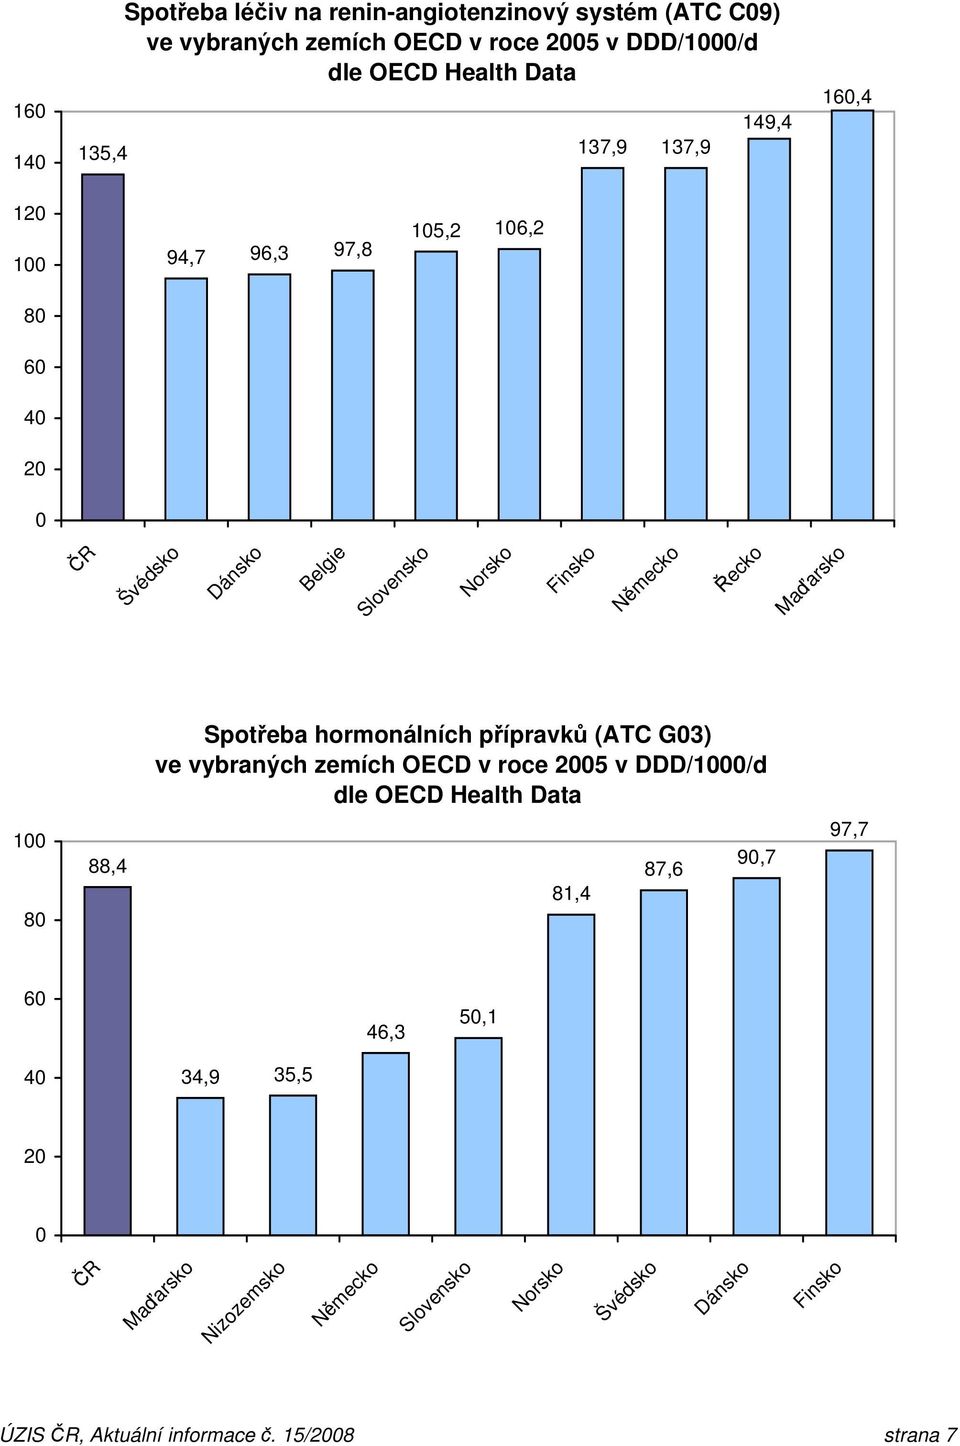 Řecko Spotřeba hormonálních přípravků (ATC G3) ve vybraných zemích OECD v roce 25 v